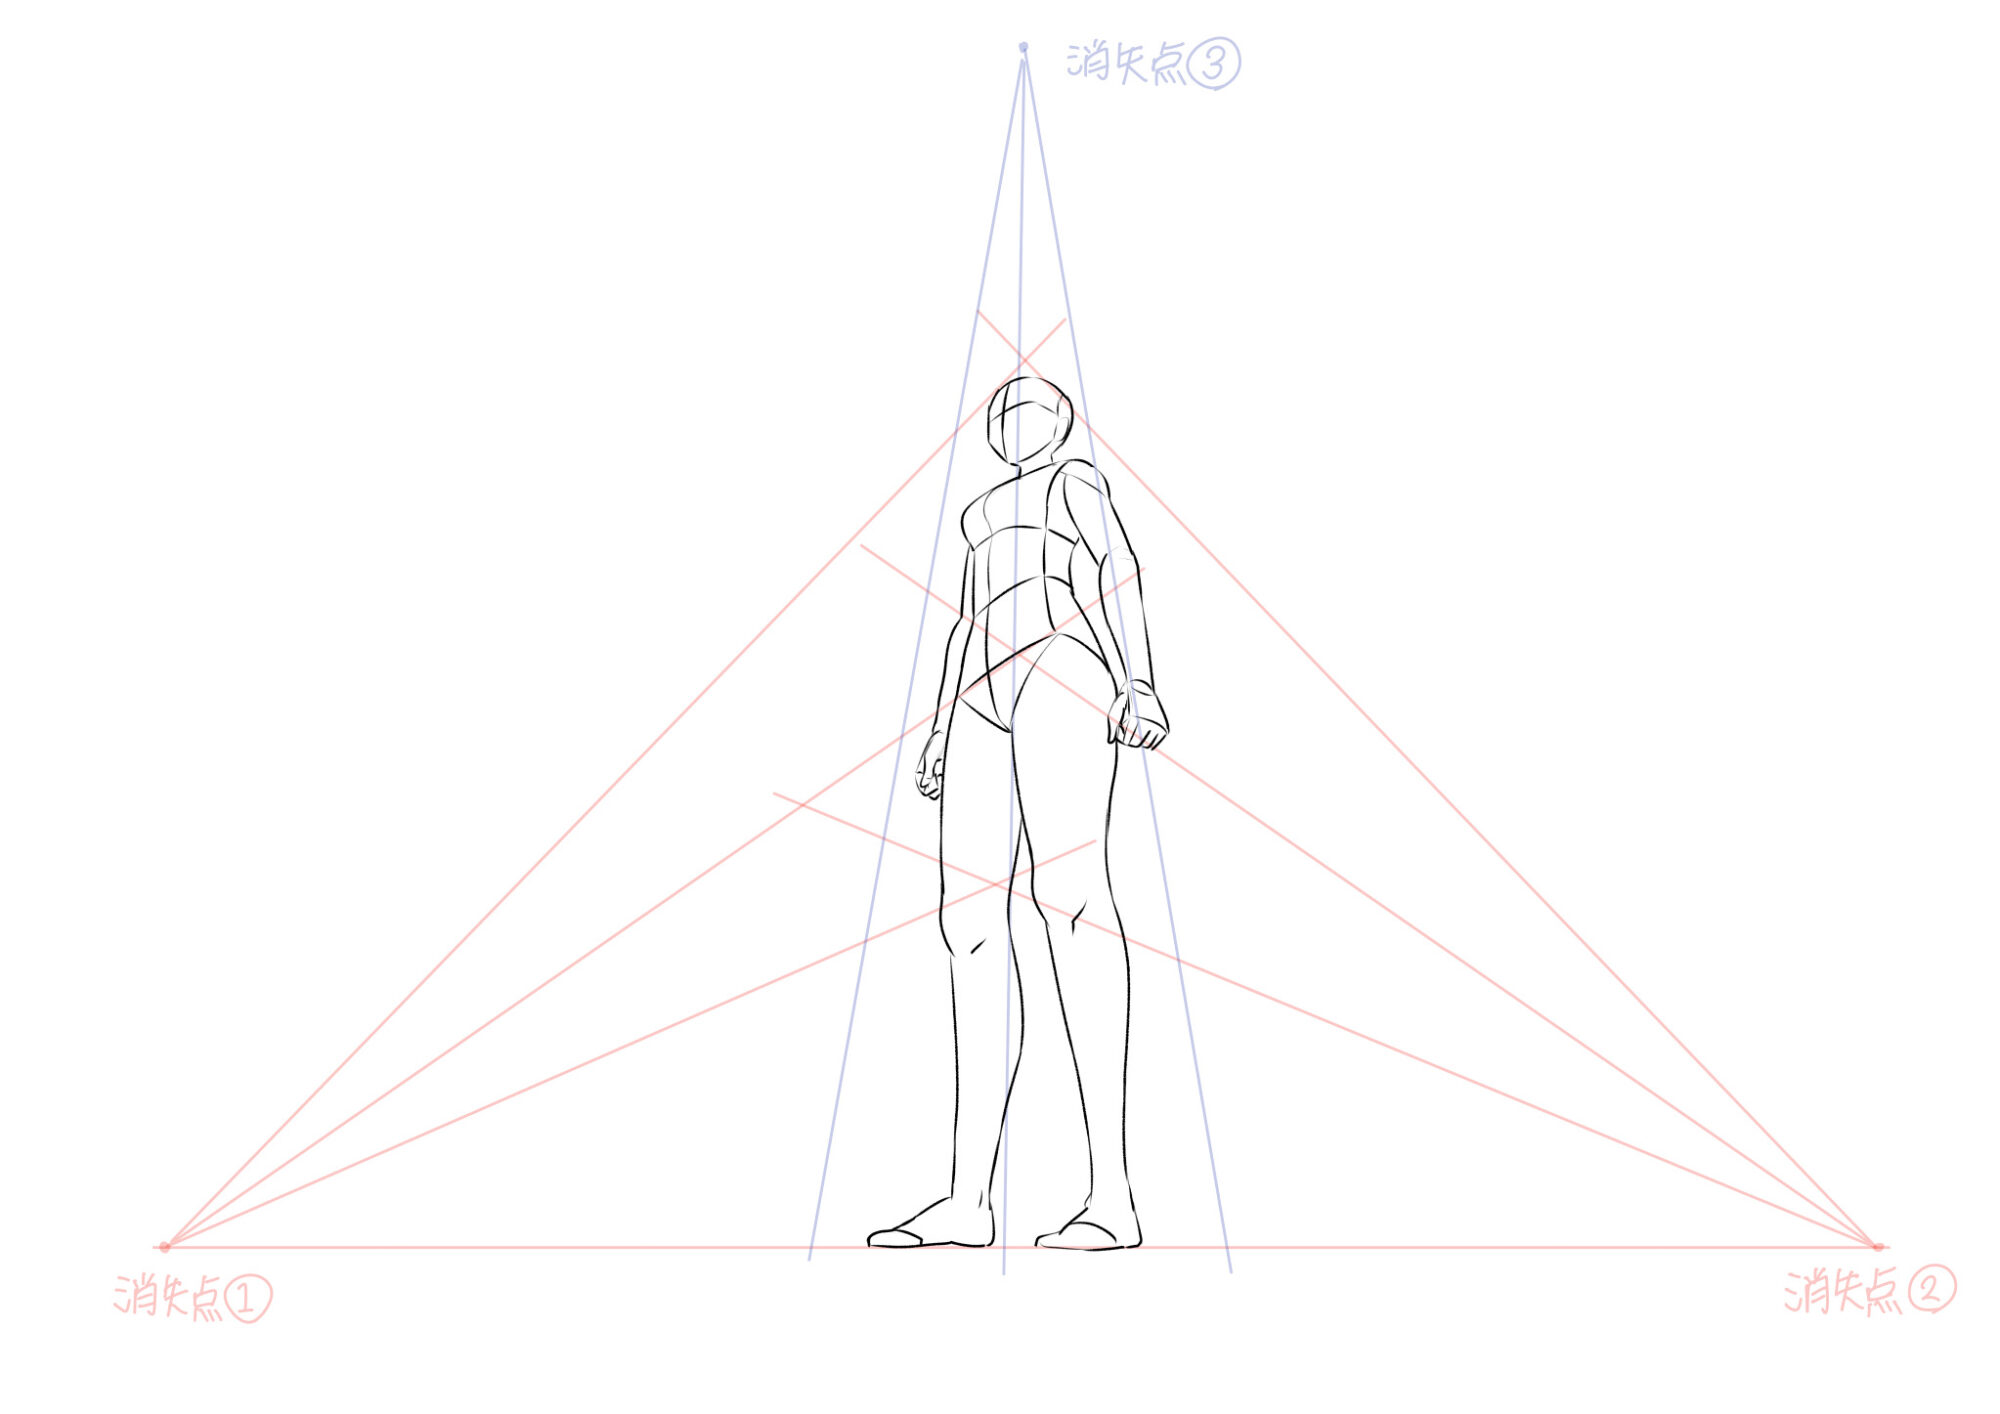 パースのあるポーズの描き方 3点透視図法を使えばカンタン あんりみてっどりーむ